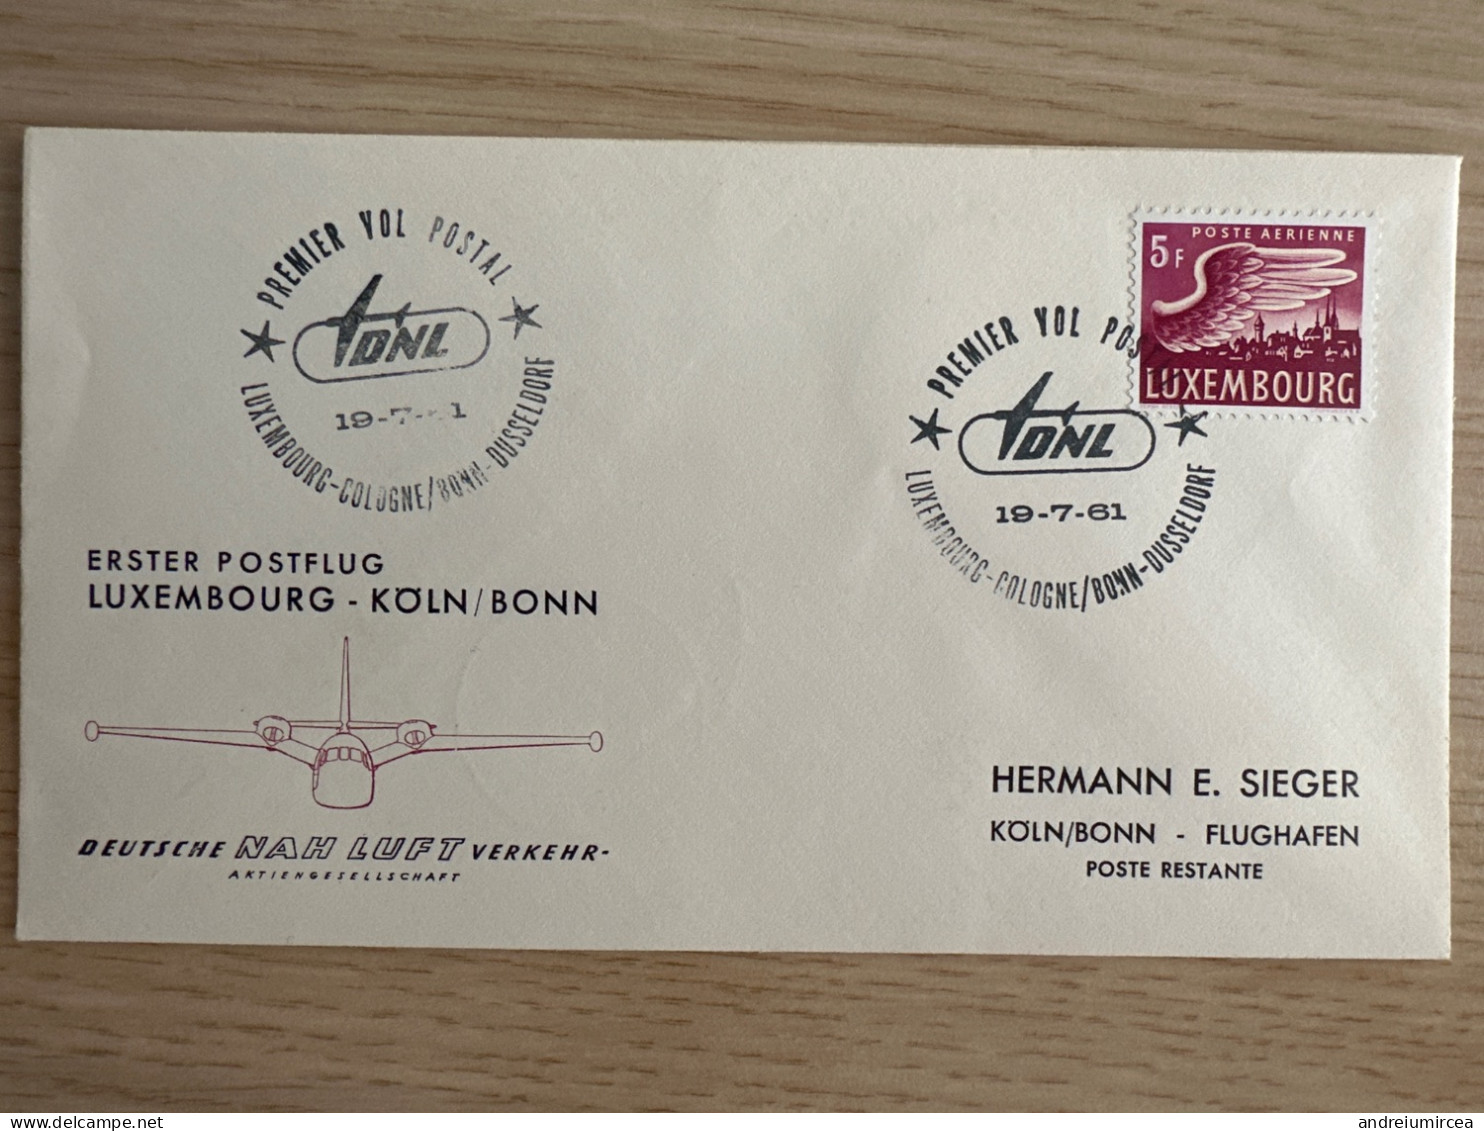 1961 Premier Vol Postal Luxembourg-Koln/Bonn - Briefe U. Dokumente